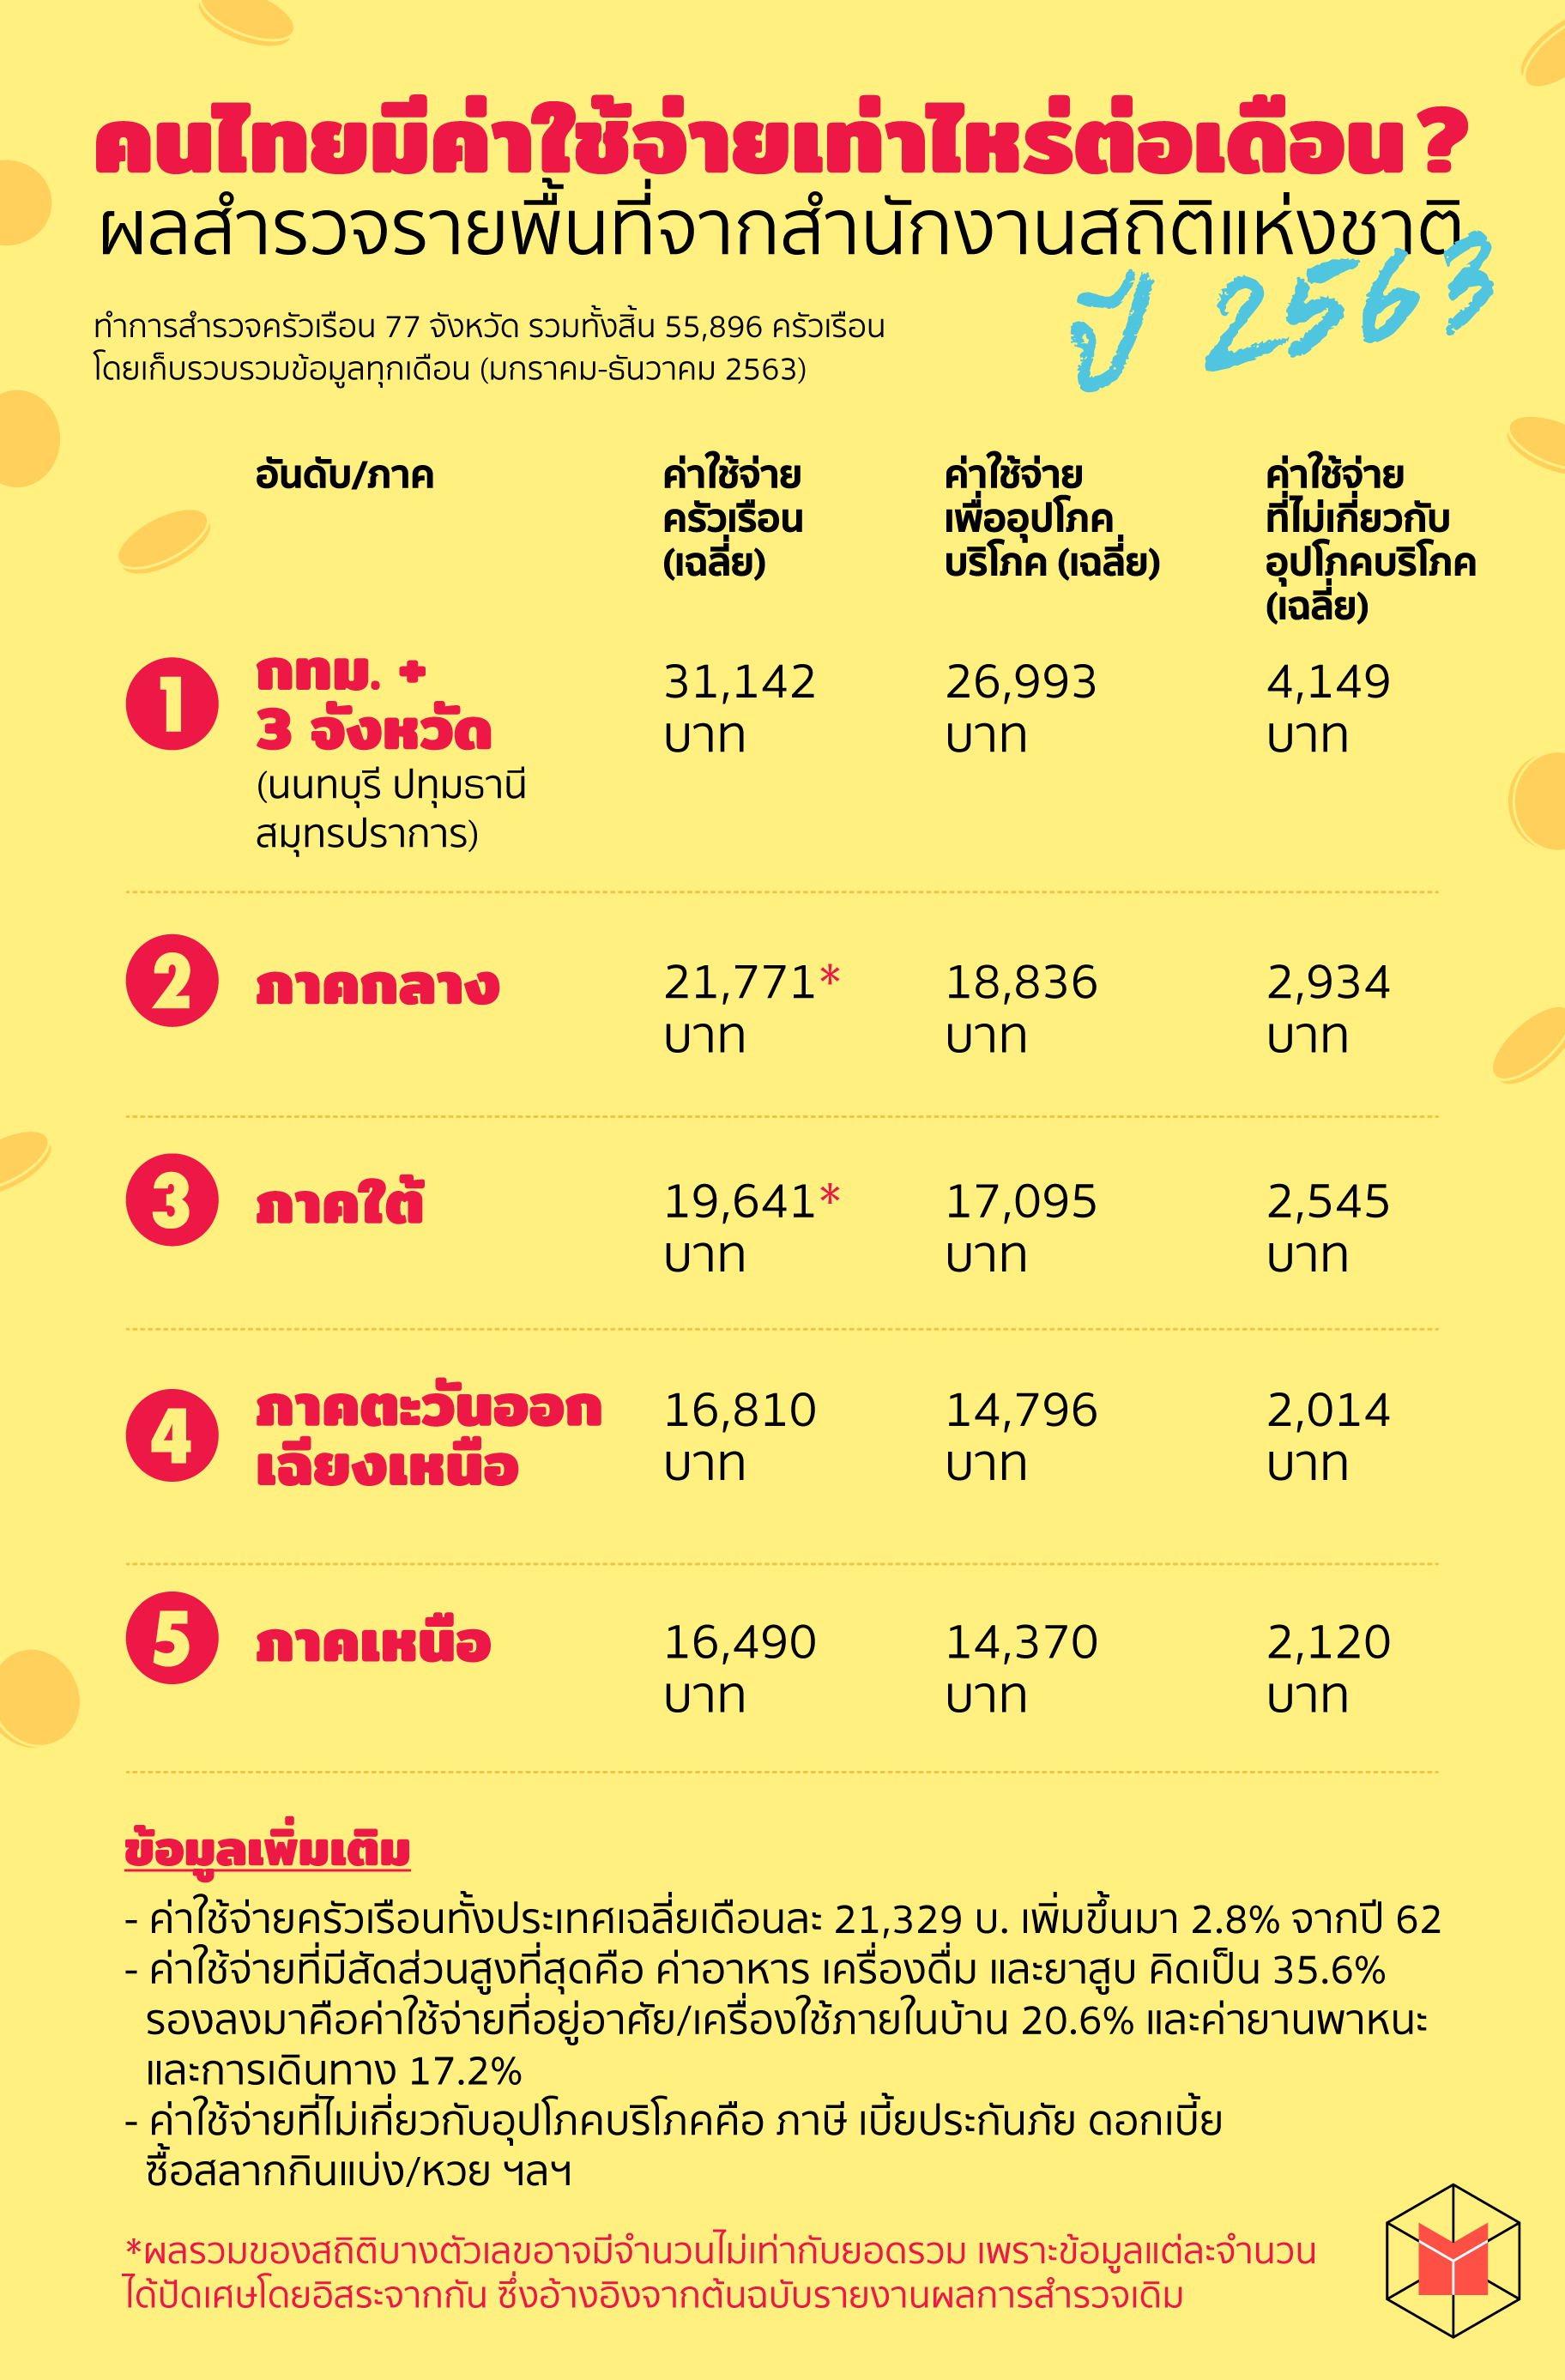 คนไทยมีค่าใช้จ่ายเท่าไหร่ต่อเดือน ผลสำรวจรายพื้นที่จากสำนักงานสถิติ